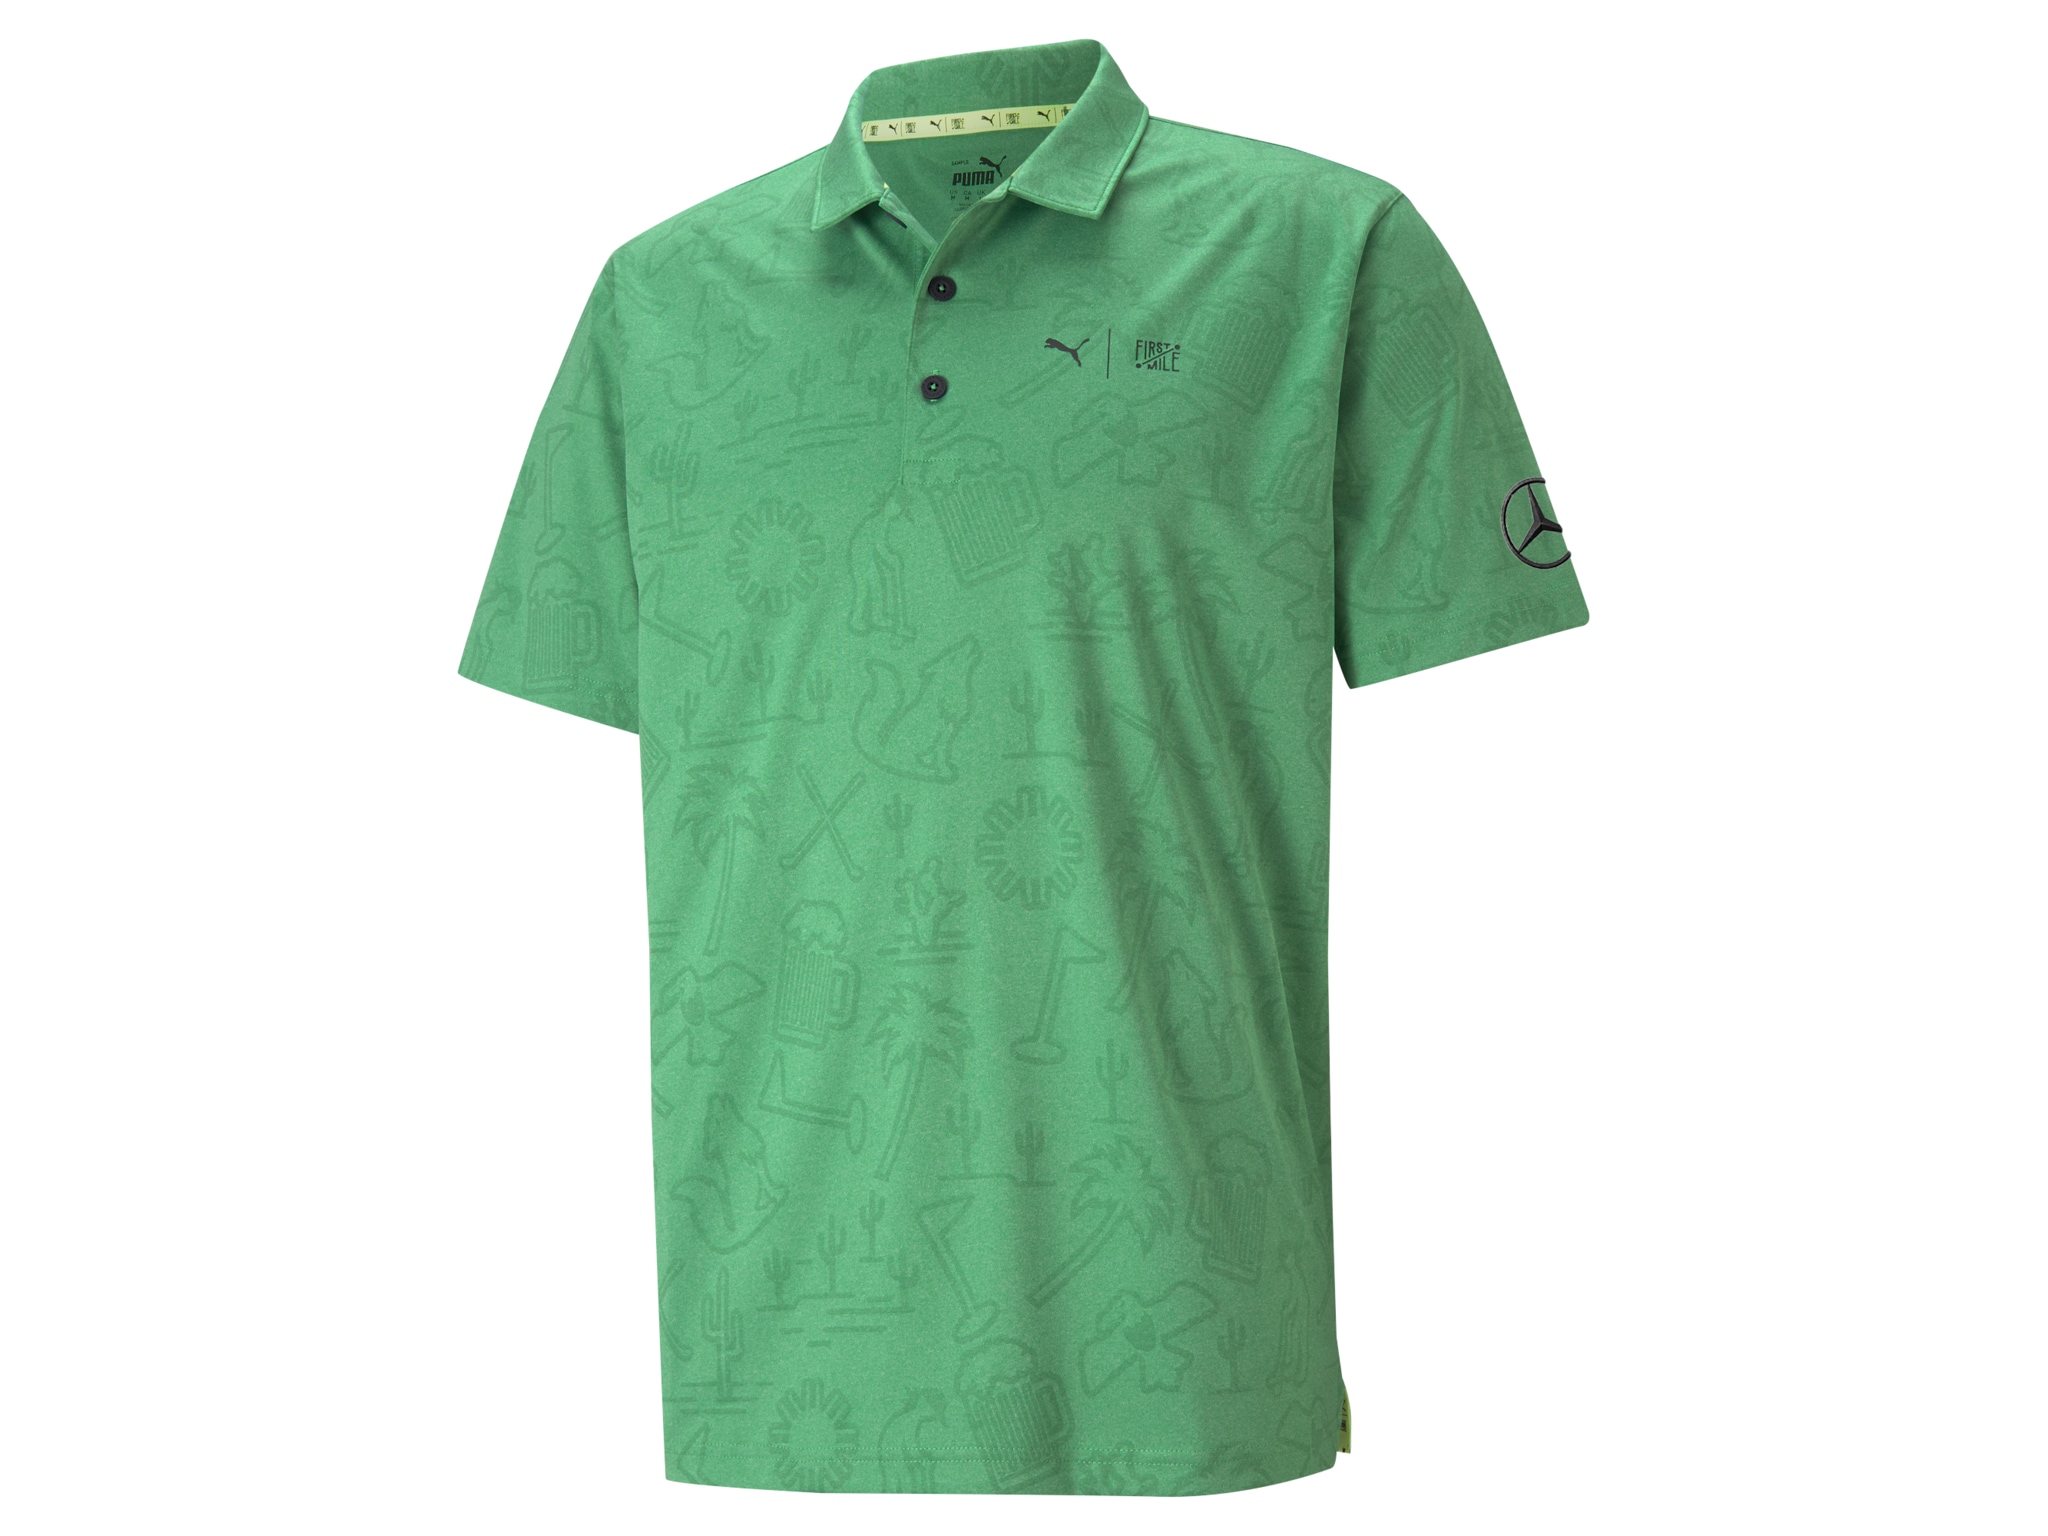 Golf-Poloshirt Herren - grün, XXL